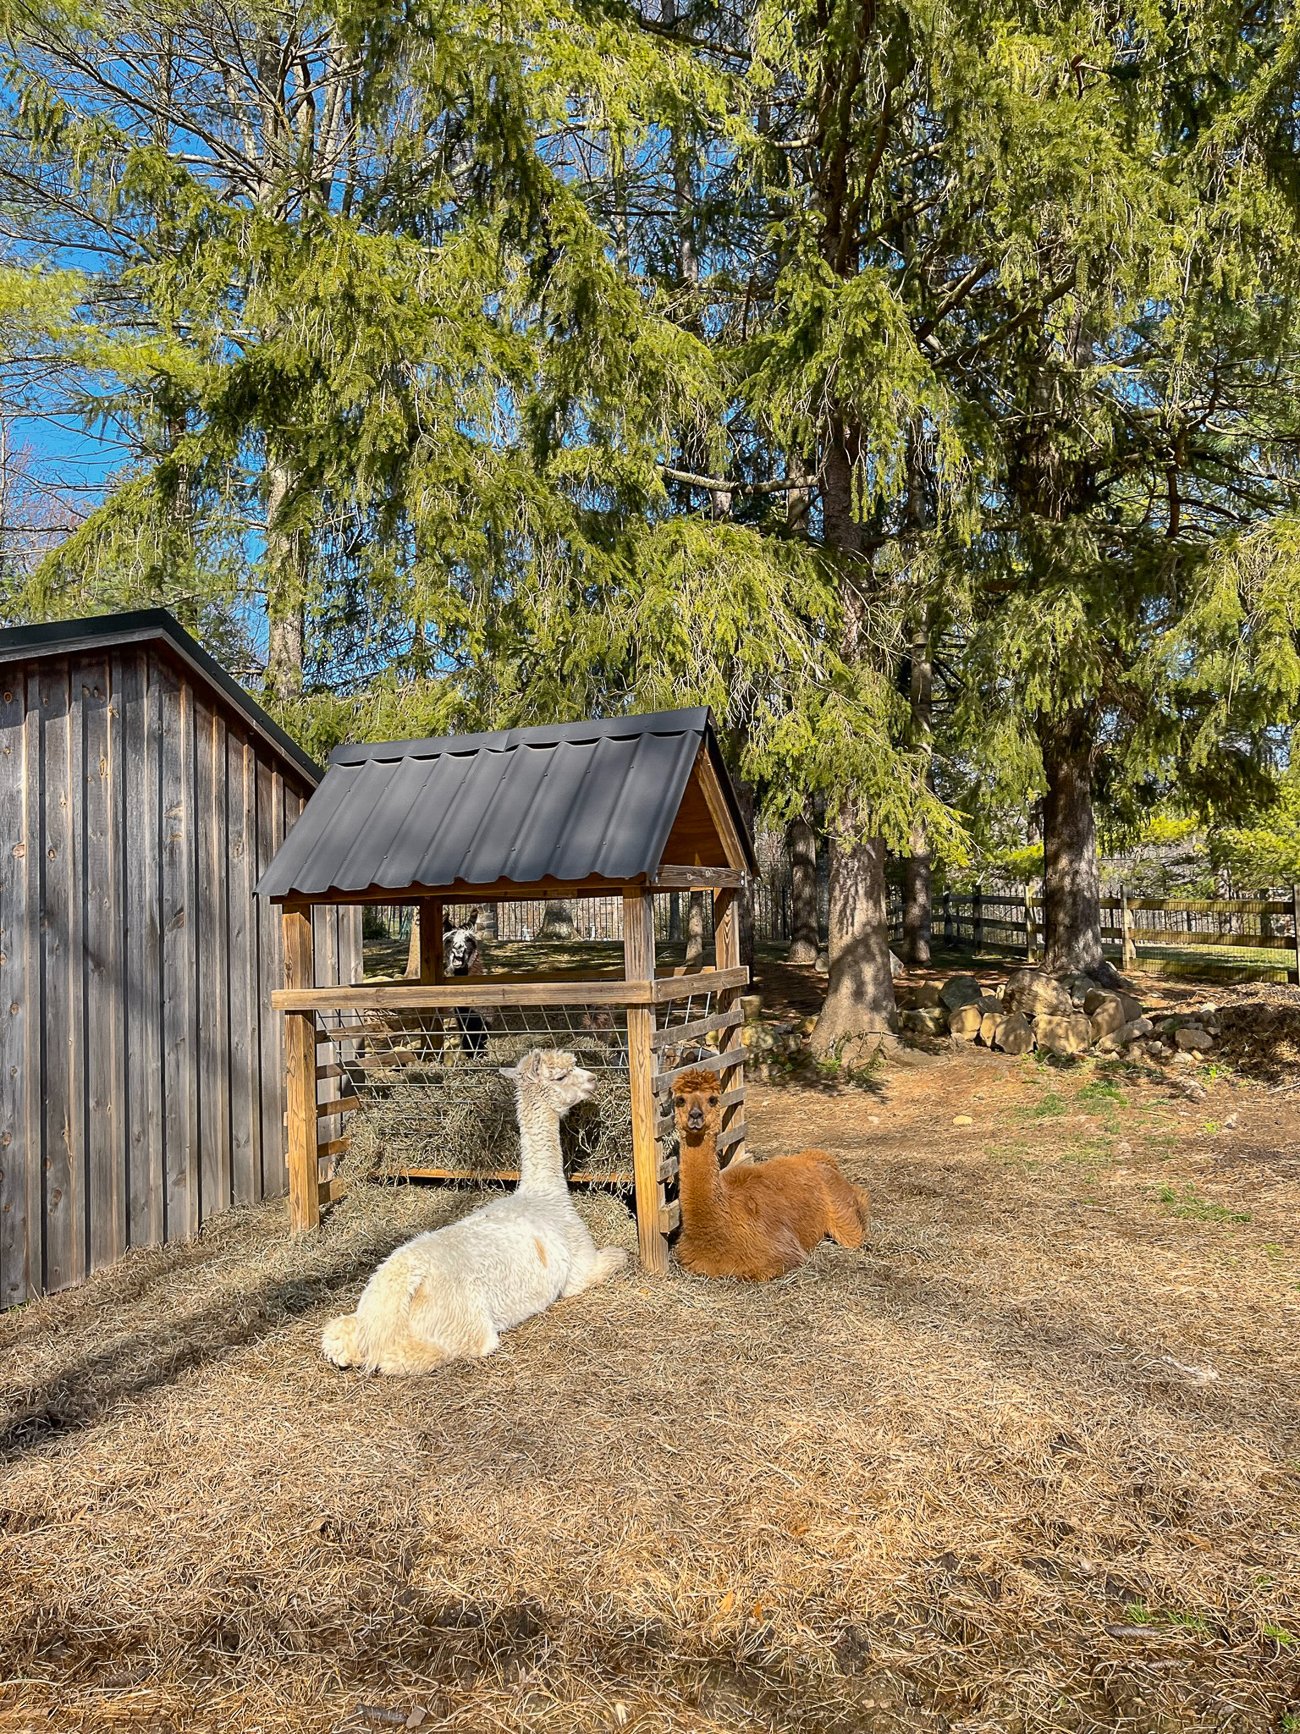 alpacas near the hay feeder